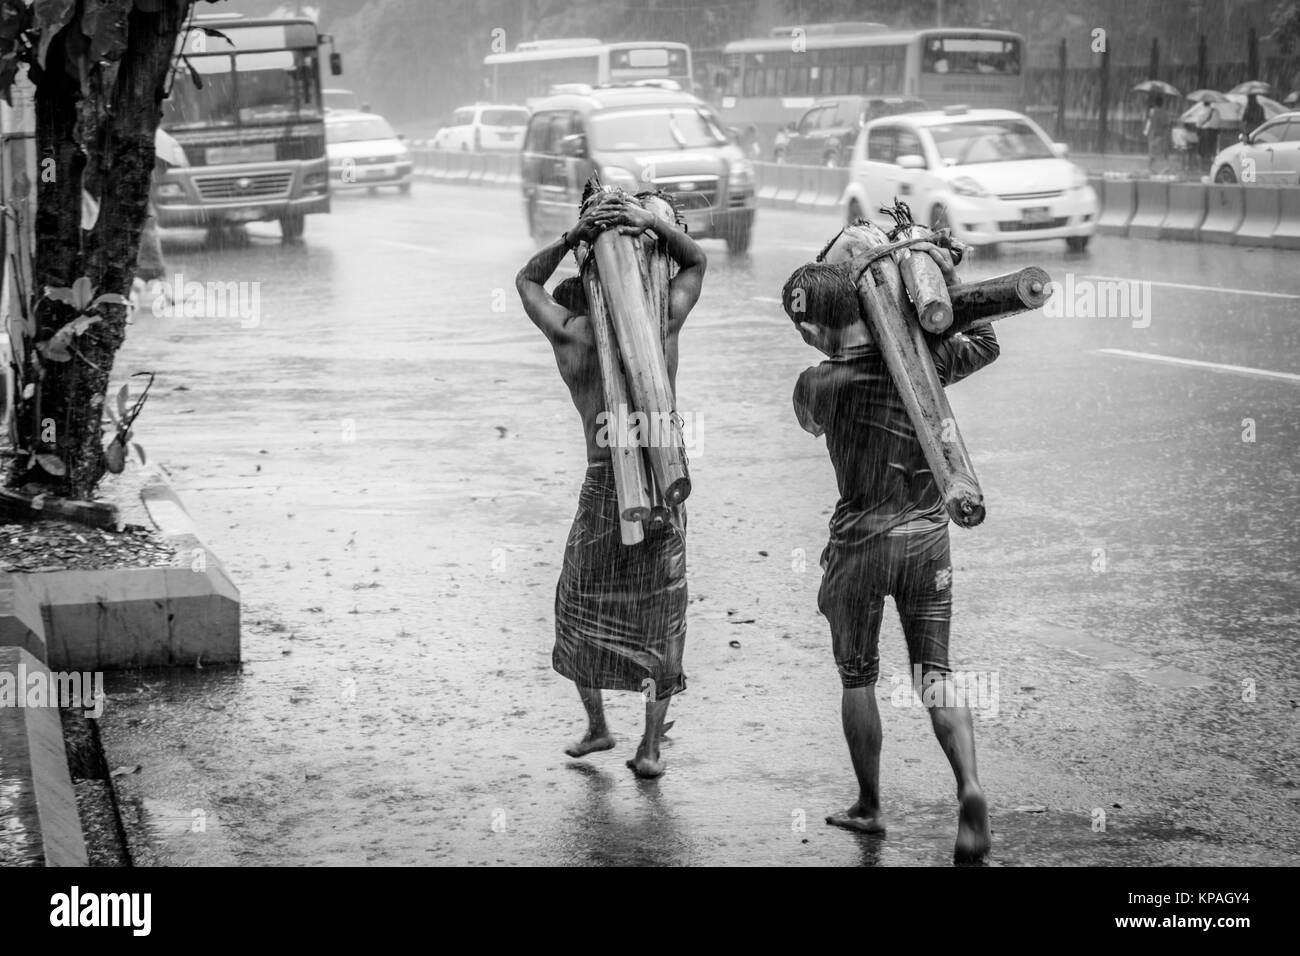 Ci sono due persone che trasportano piante di banana sulla strada, sotto la pioggia Foto Stock